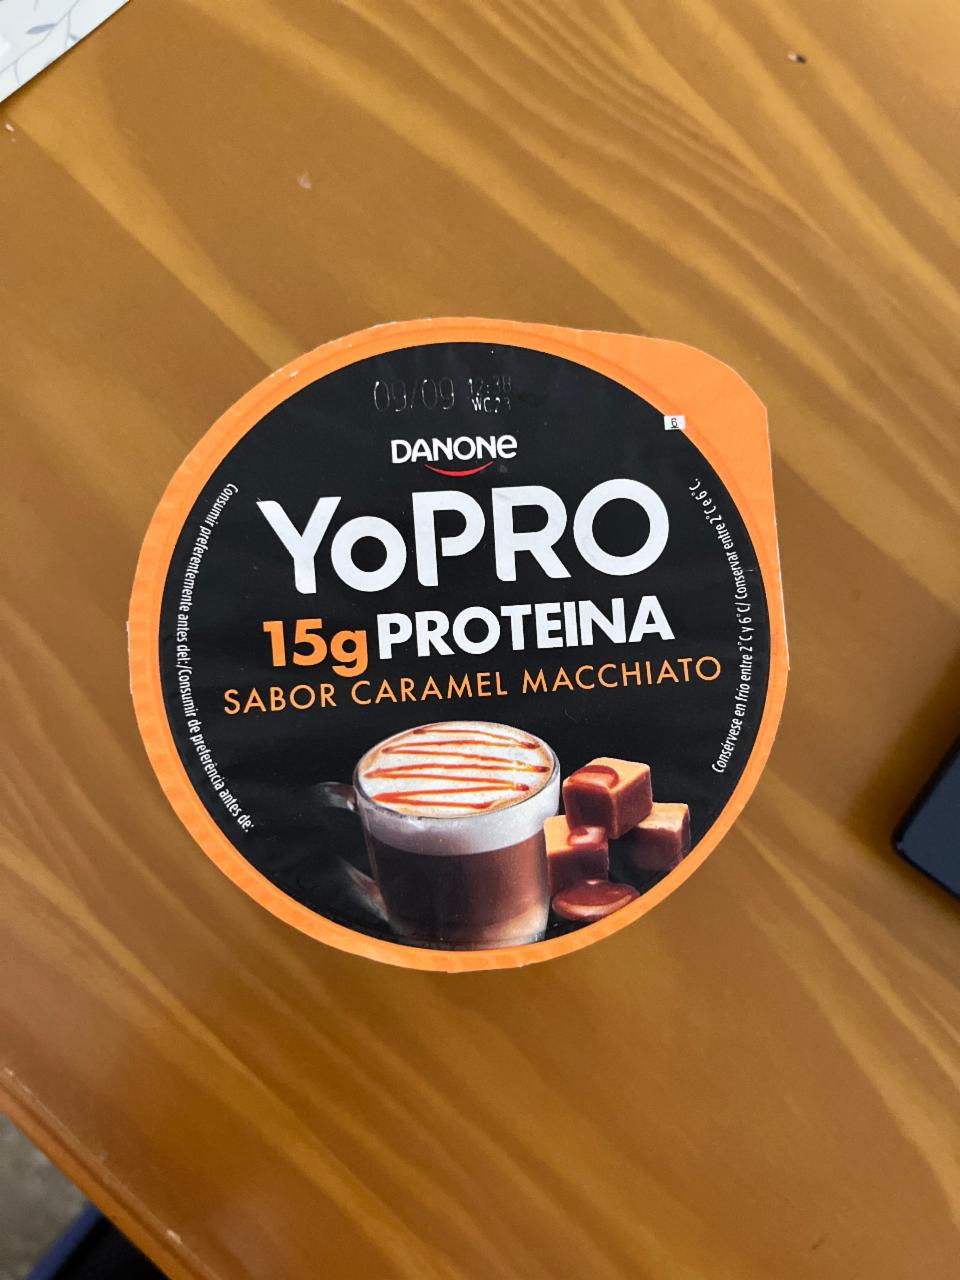 Фото - протеиновый йогурт со вкусом карамельный макиатоYoPro caramel macchiato Danone